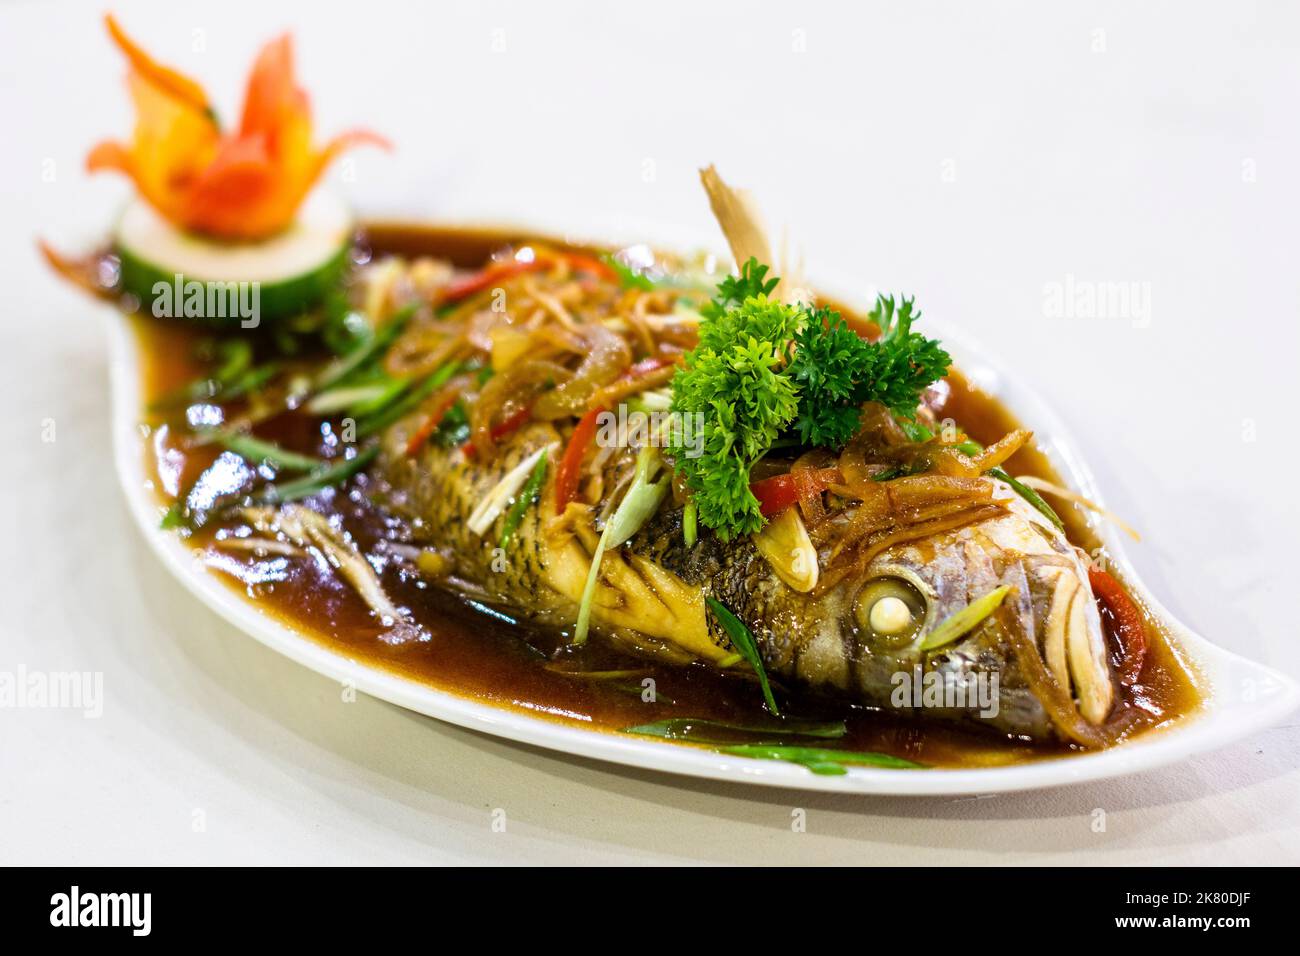 Plat de poisson entier cuit localement appelé escabeche dans un restaurant local dans la ville d'Ozamiz, Philippines Banque D'Images